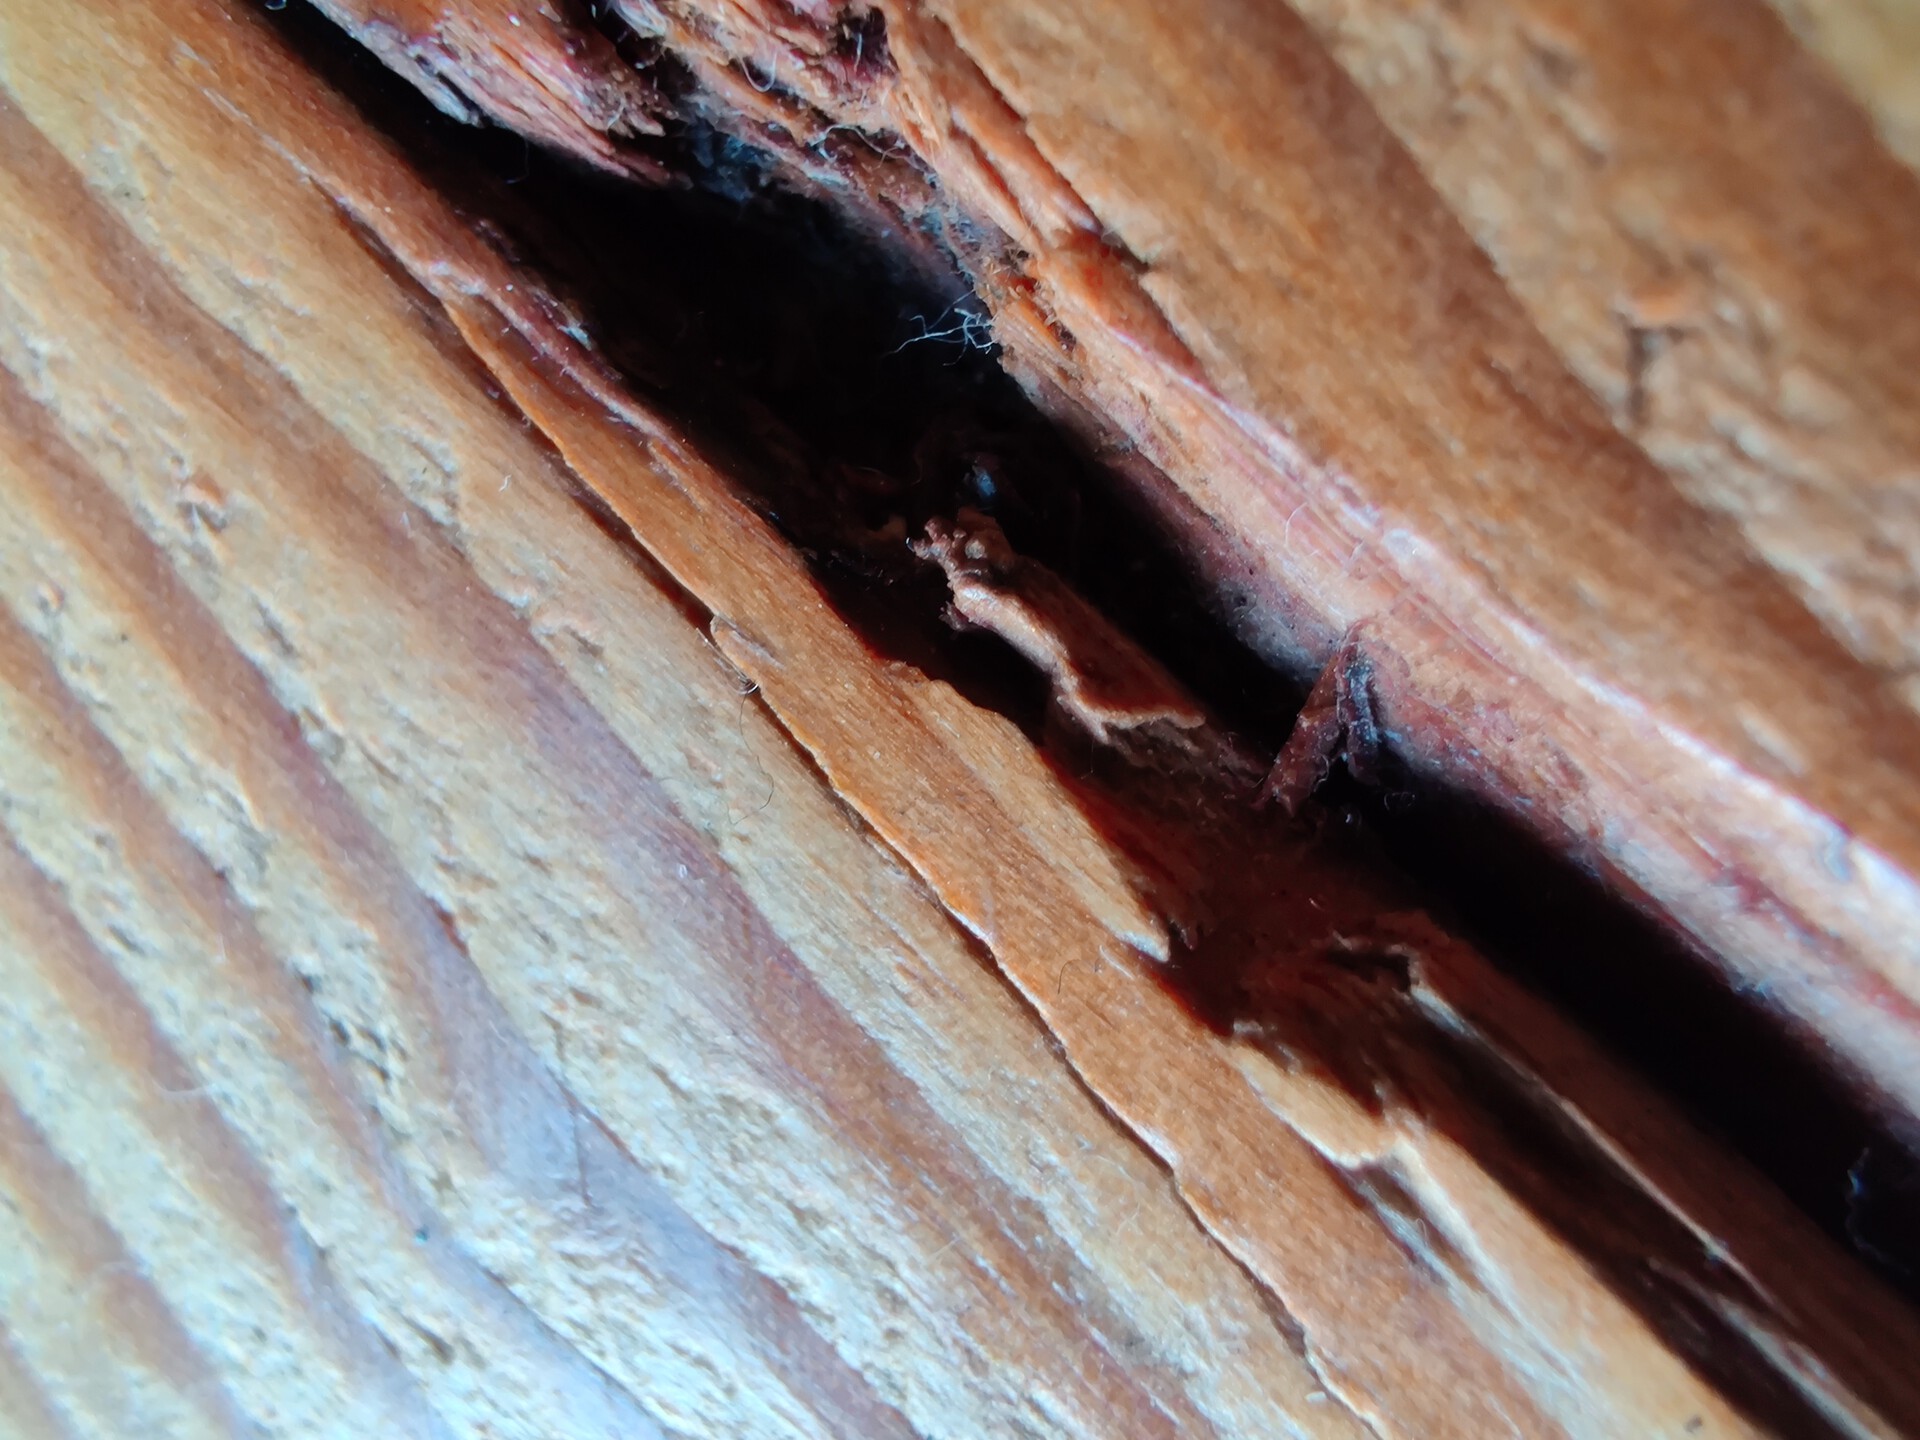 OnePlus 7T wood macro shot